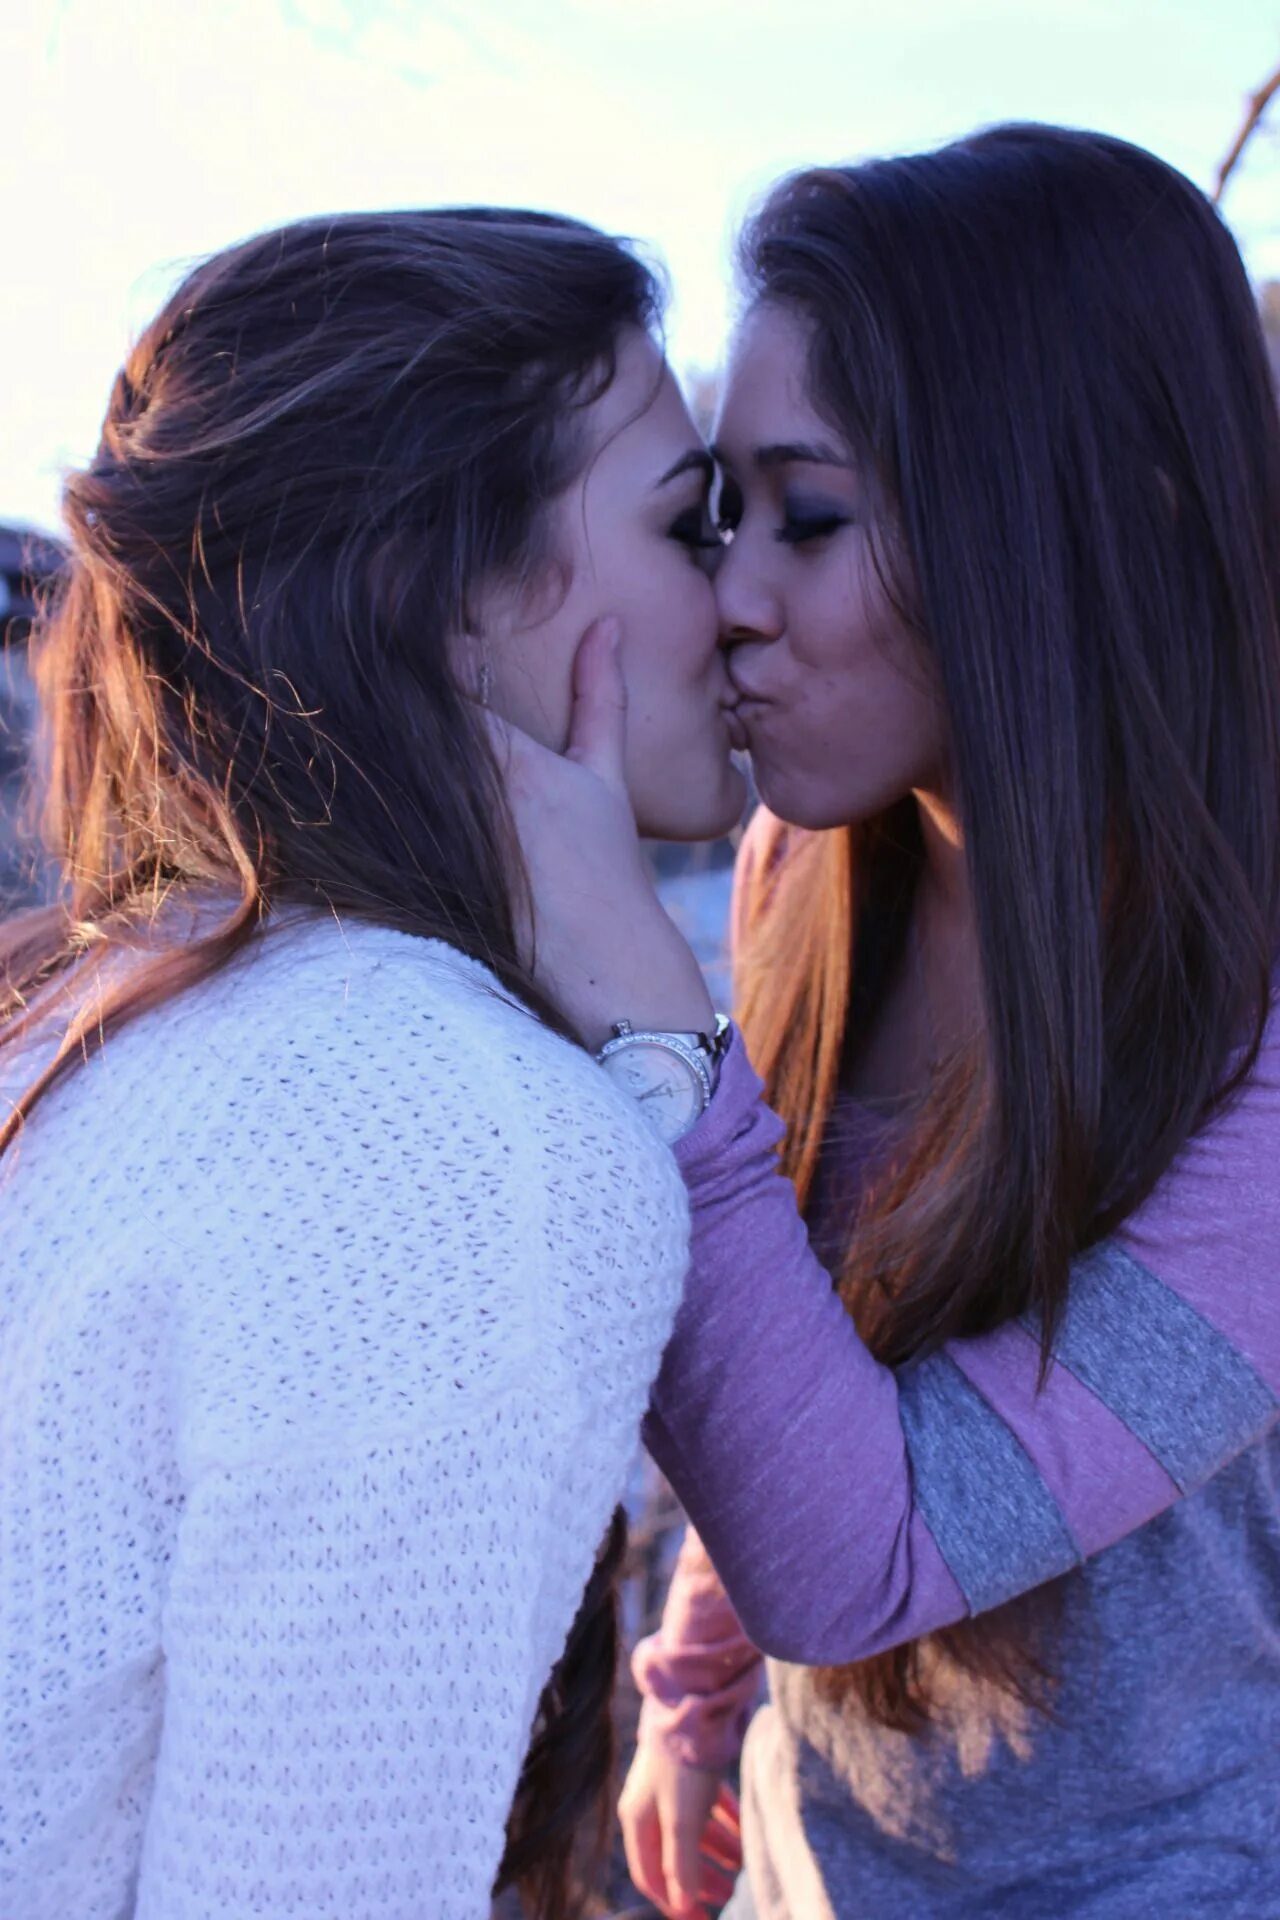 Lesbian 7. Two girlfriends Wallpaper. Pic lesbian Lebanese. Engage Kiss. Katrin ko lesbian photo.